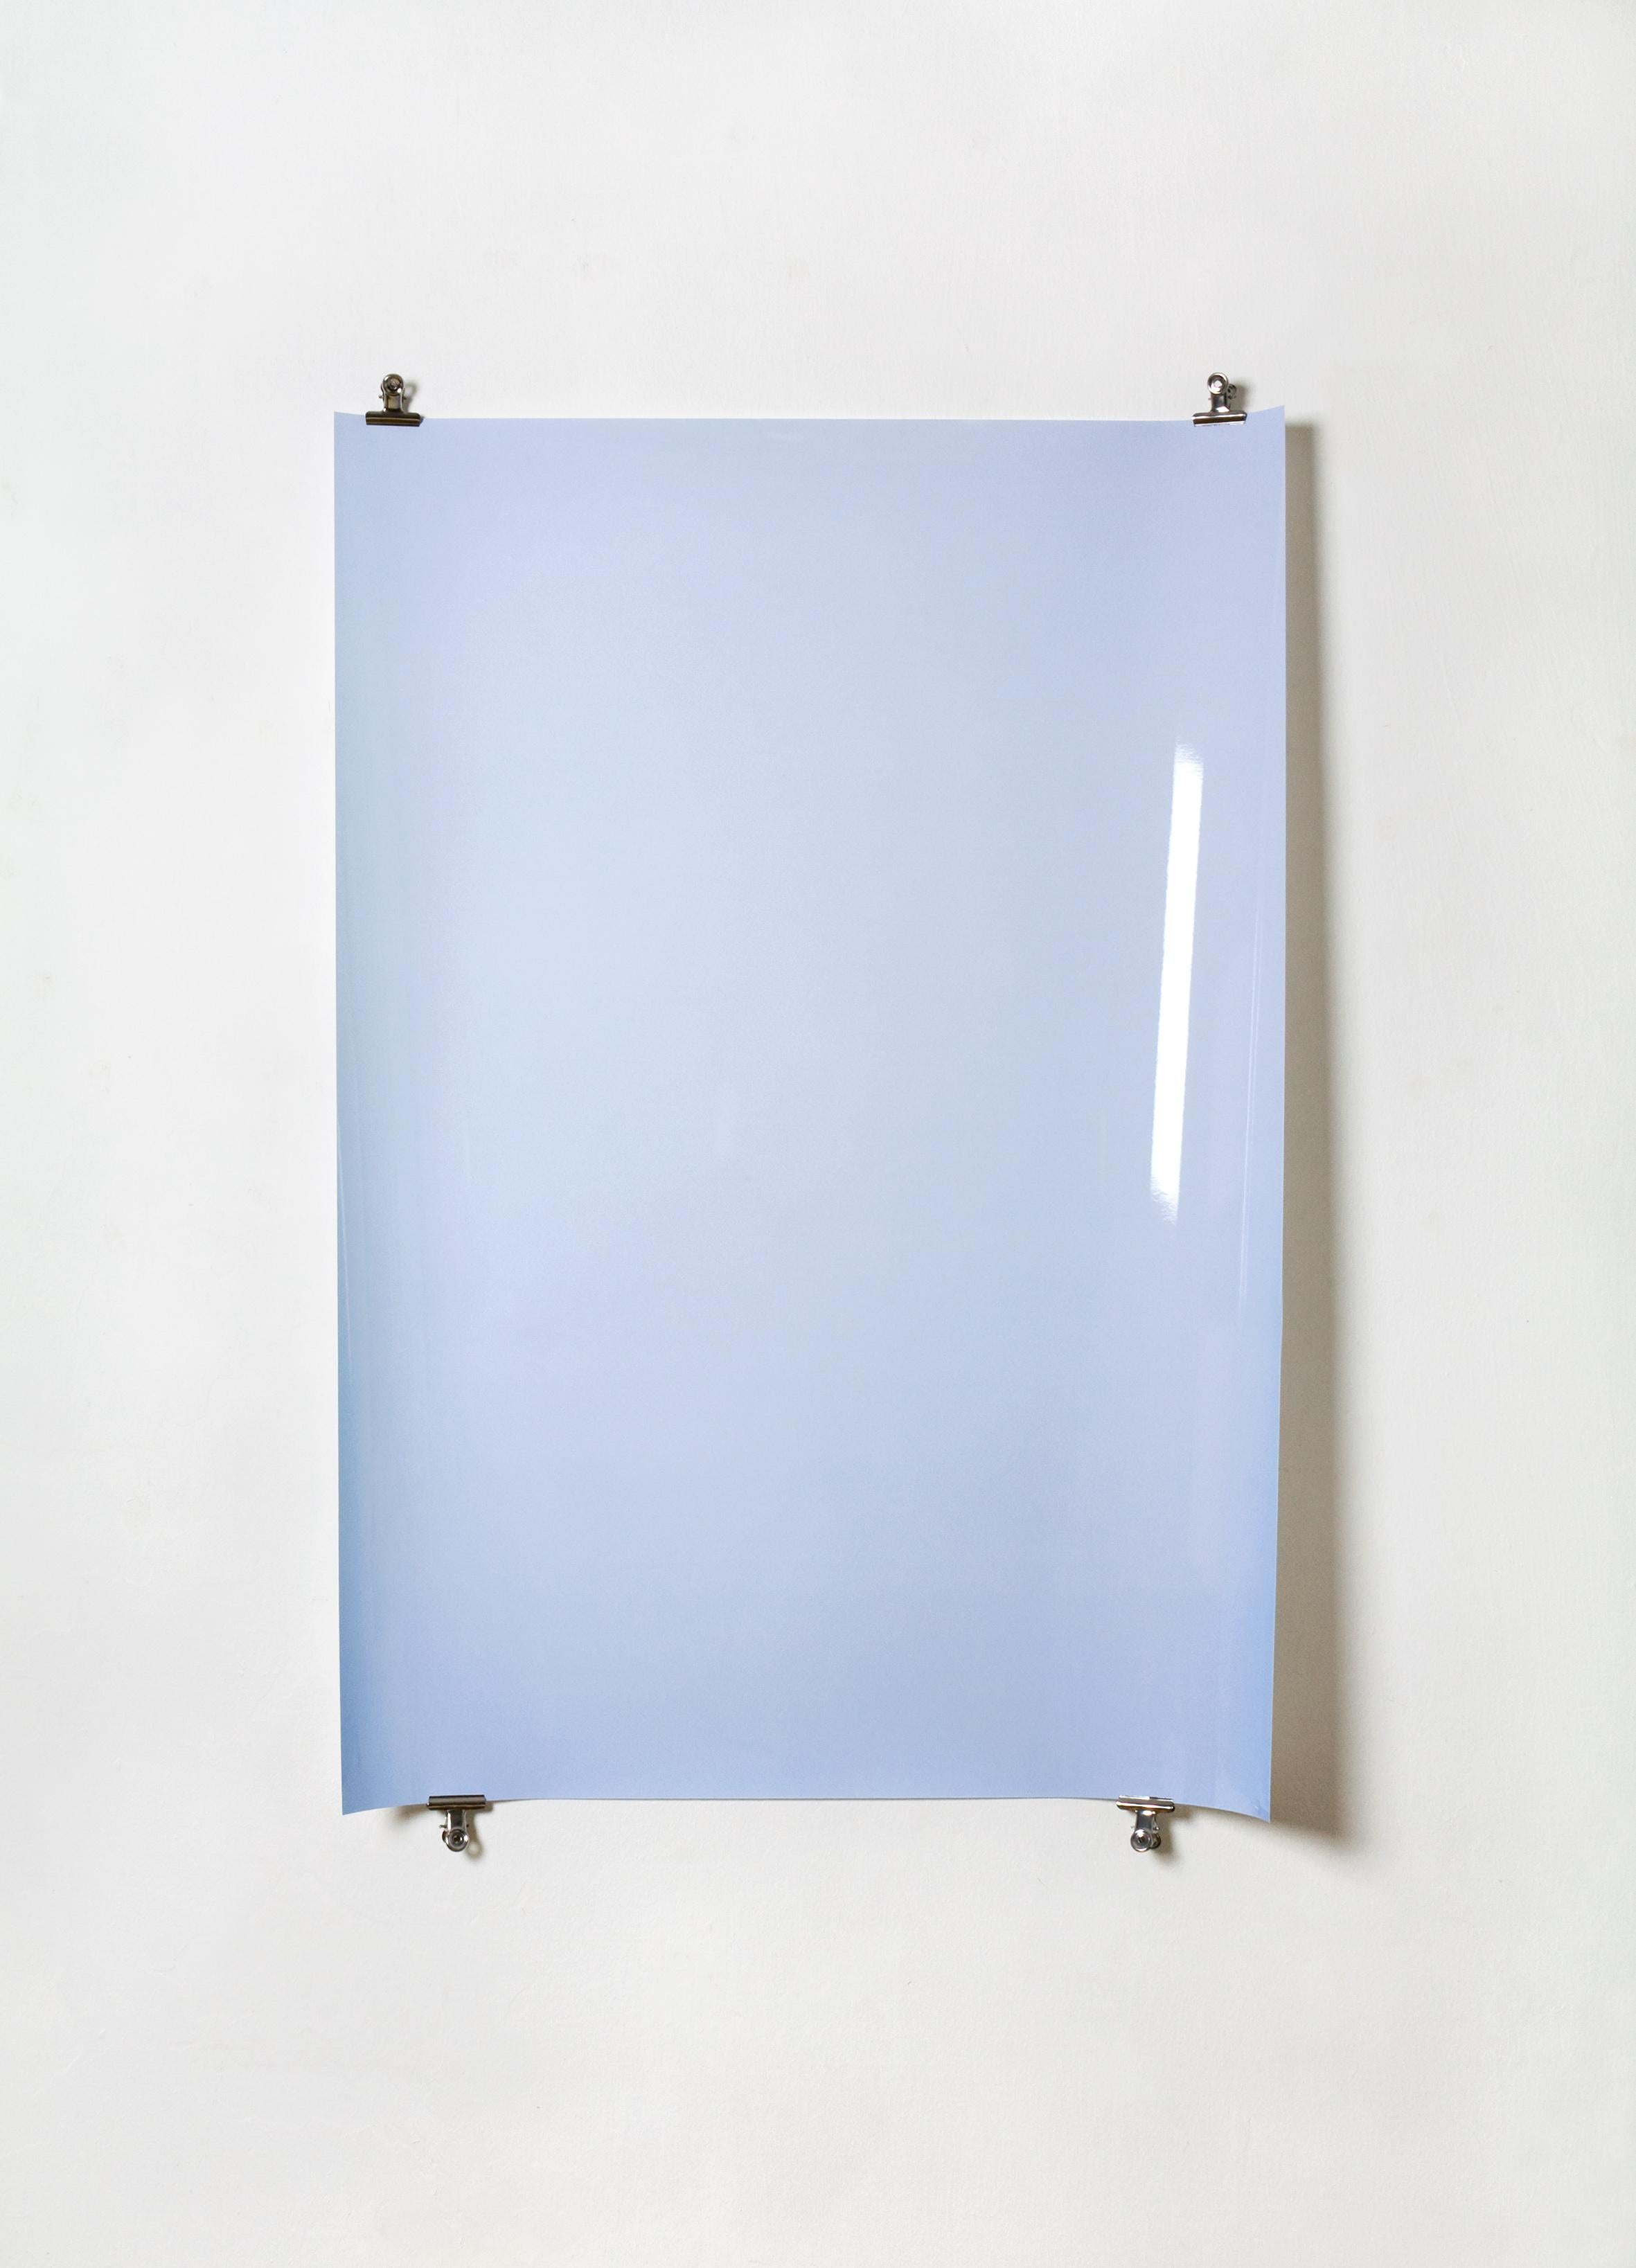 Schatten auf Papier, Nr. 1 – Zeitgenössische abstrakte blaue monochrome Fotografie – Photograph von Ulrike Königshofer